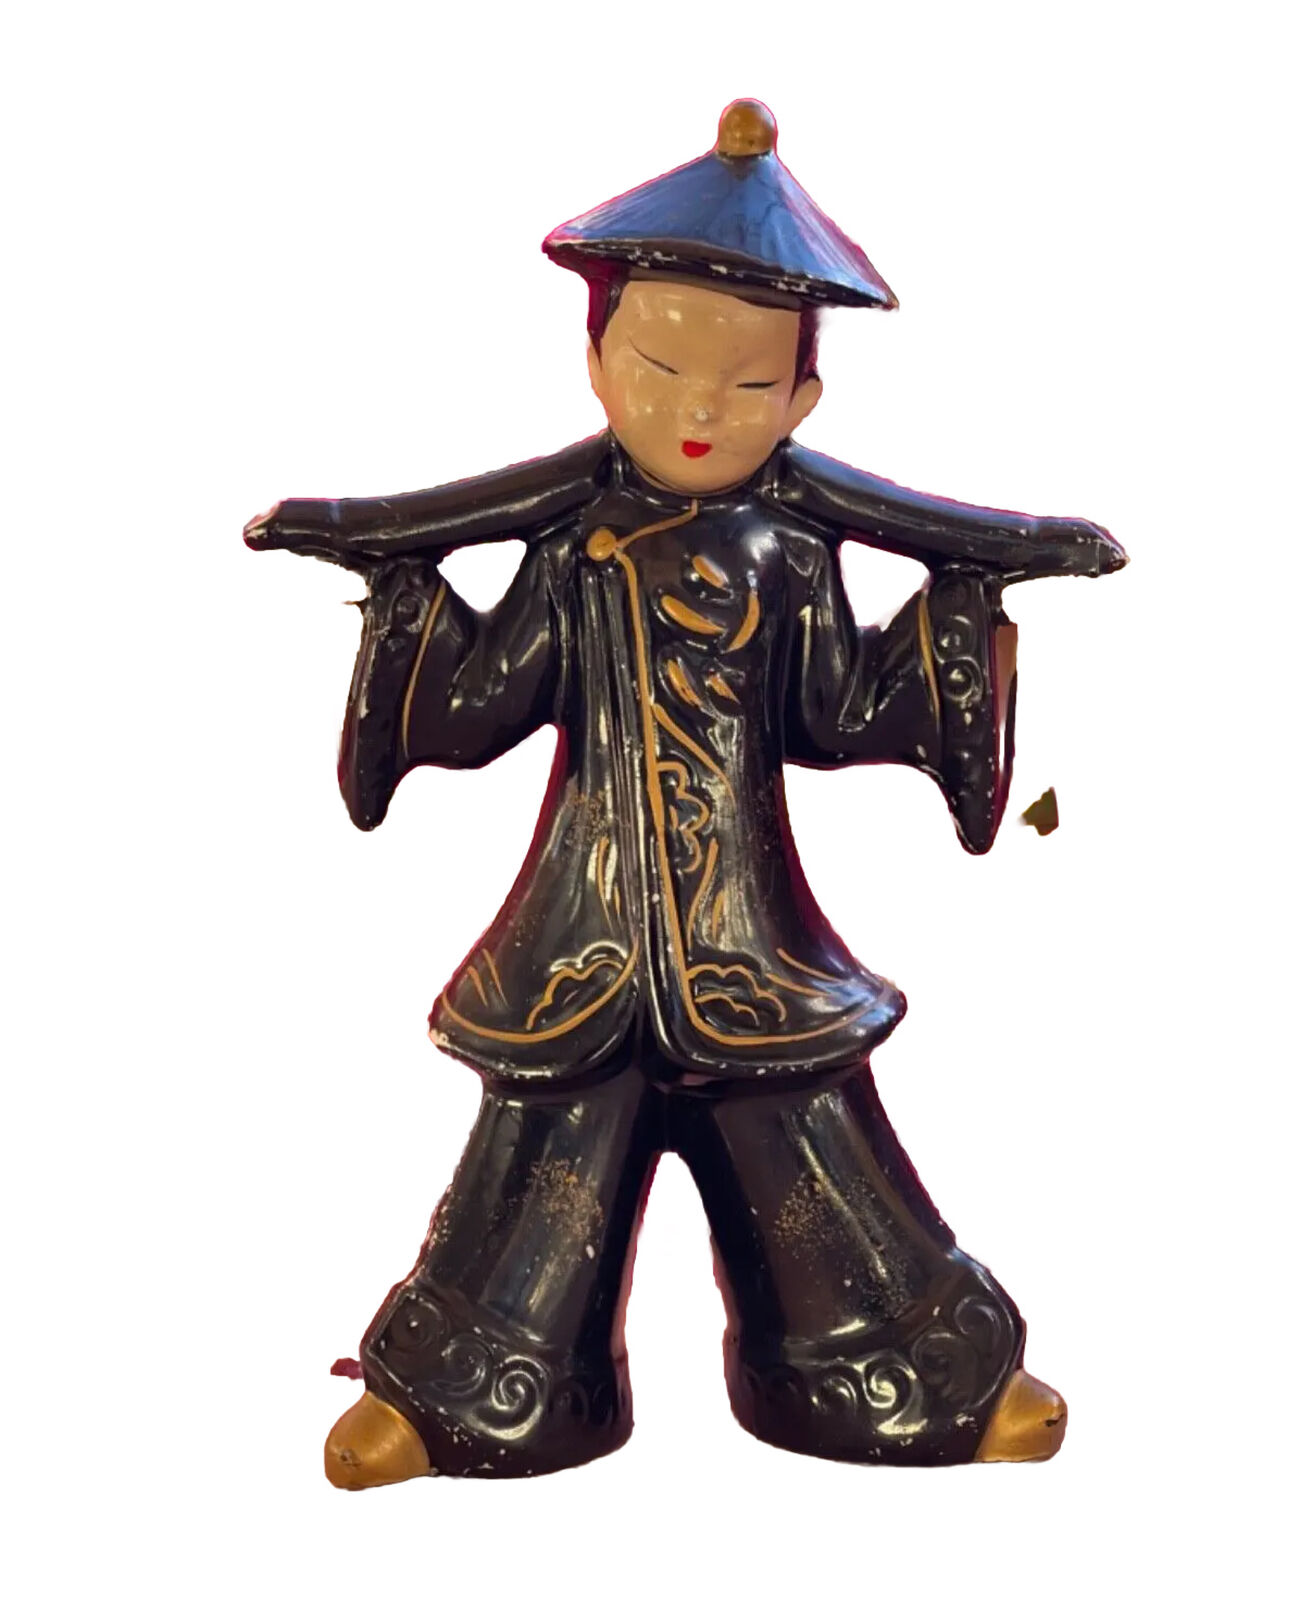 Vintage Mid-Century Modern Chinoiserie Ceramic Figurine